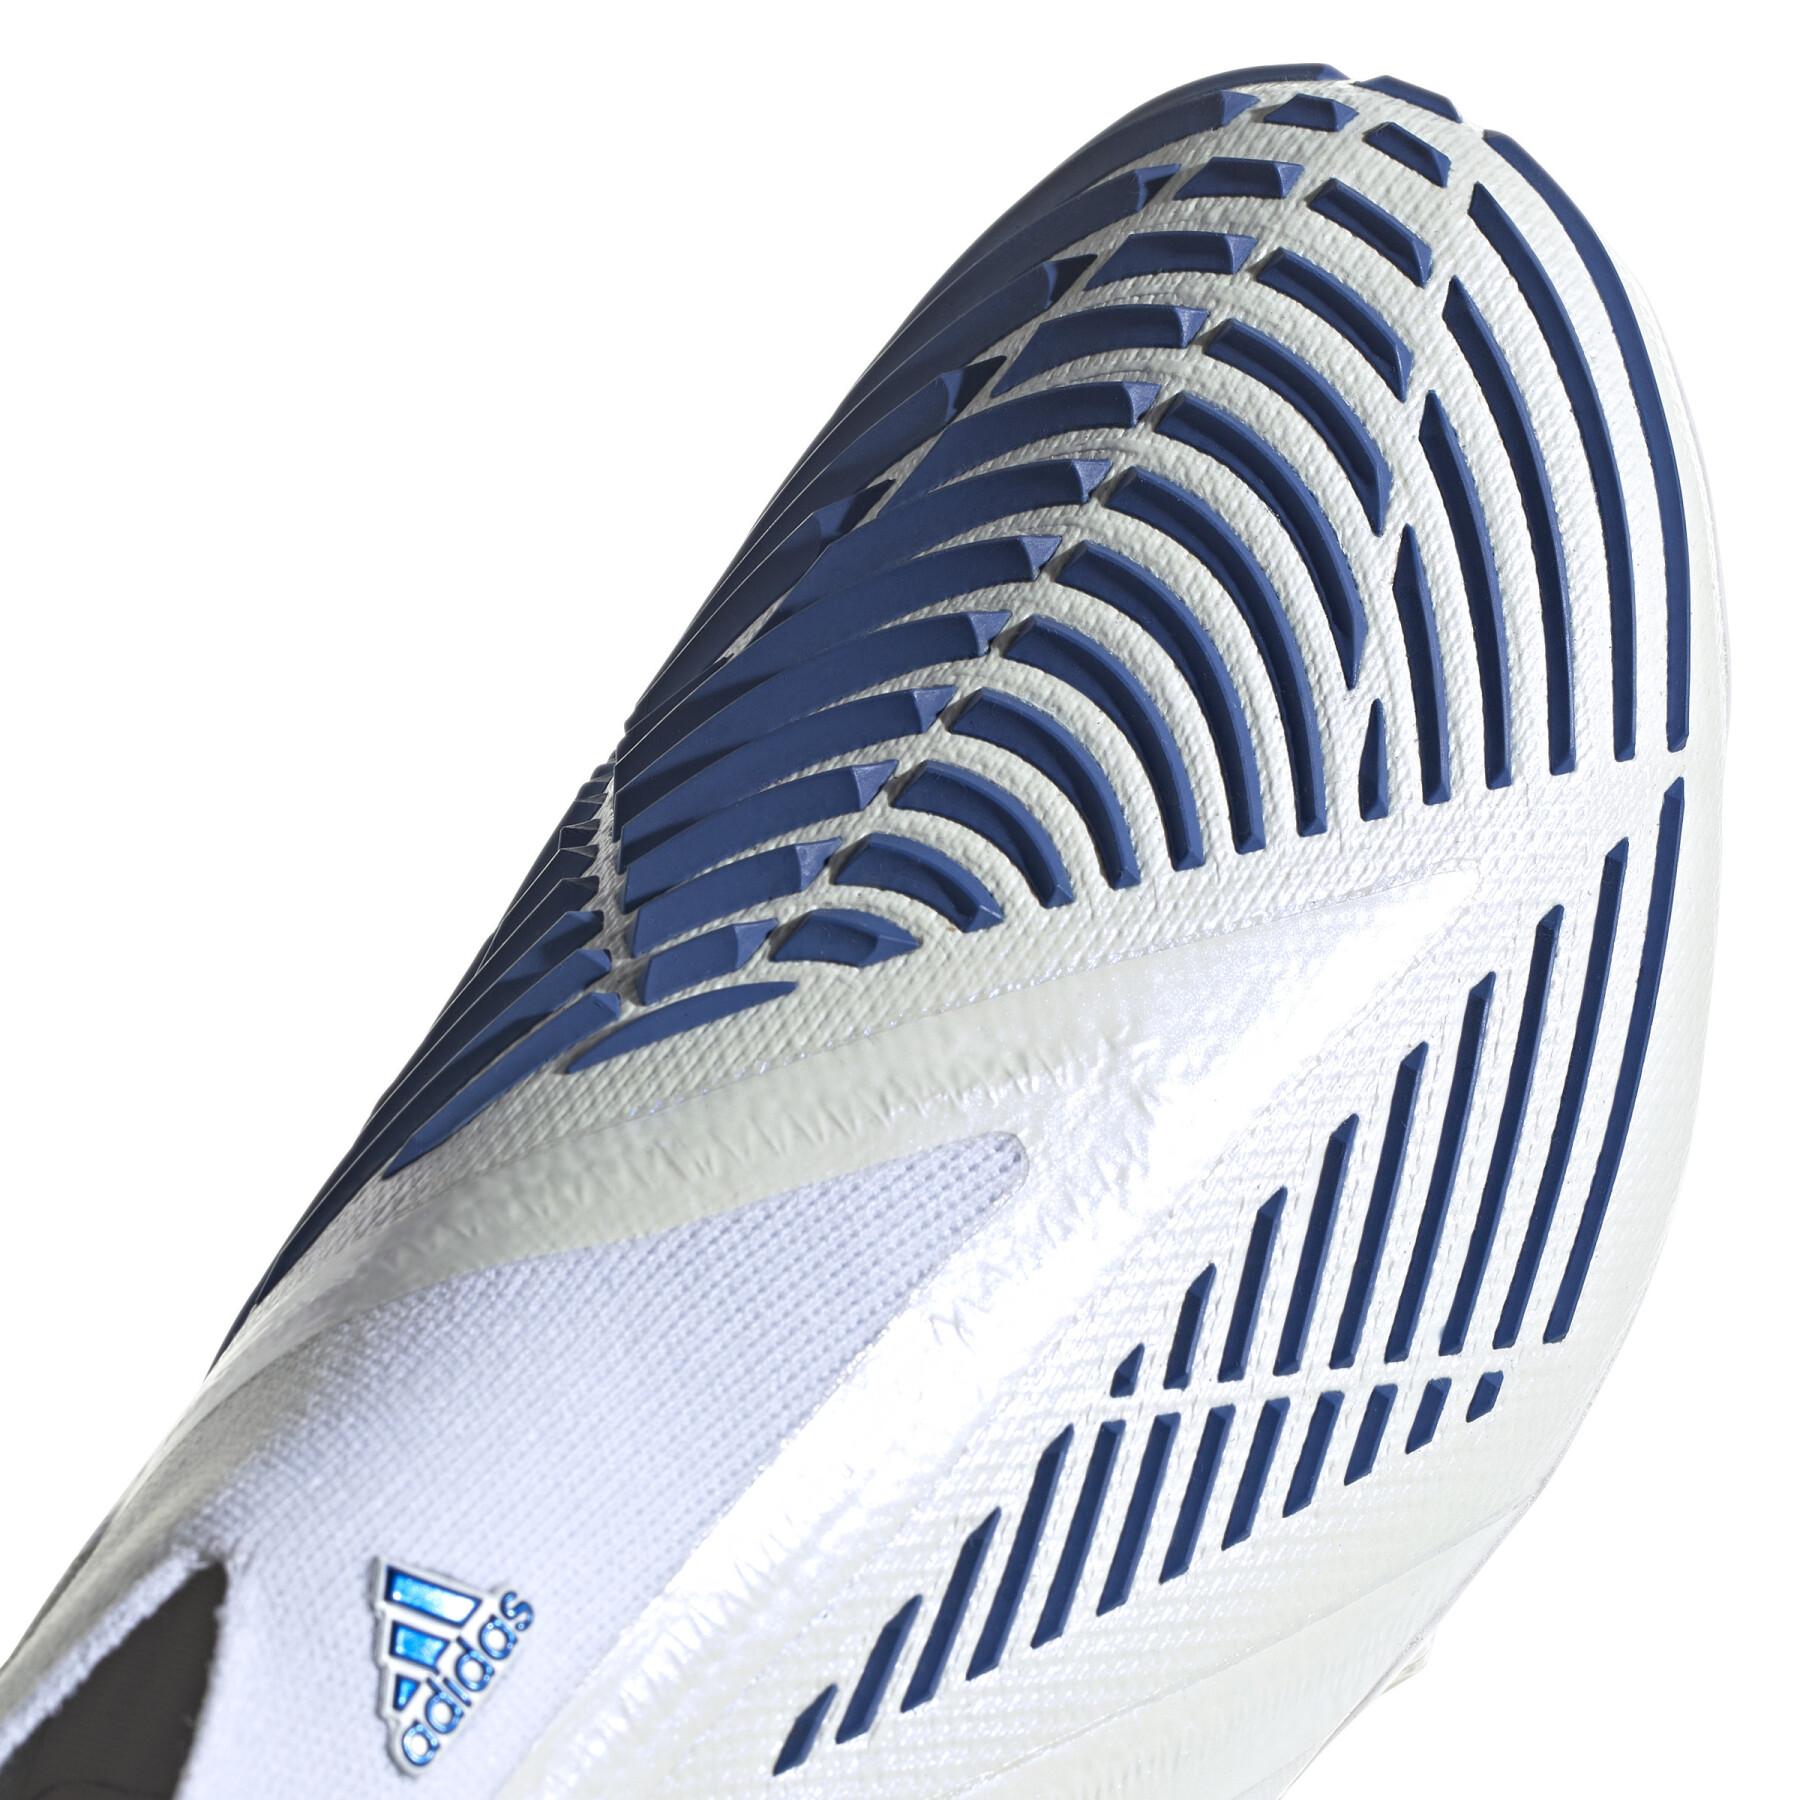 Sapatos de futebol adidas Predator Edge+ FG - Diamond Edge Pack